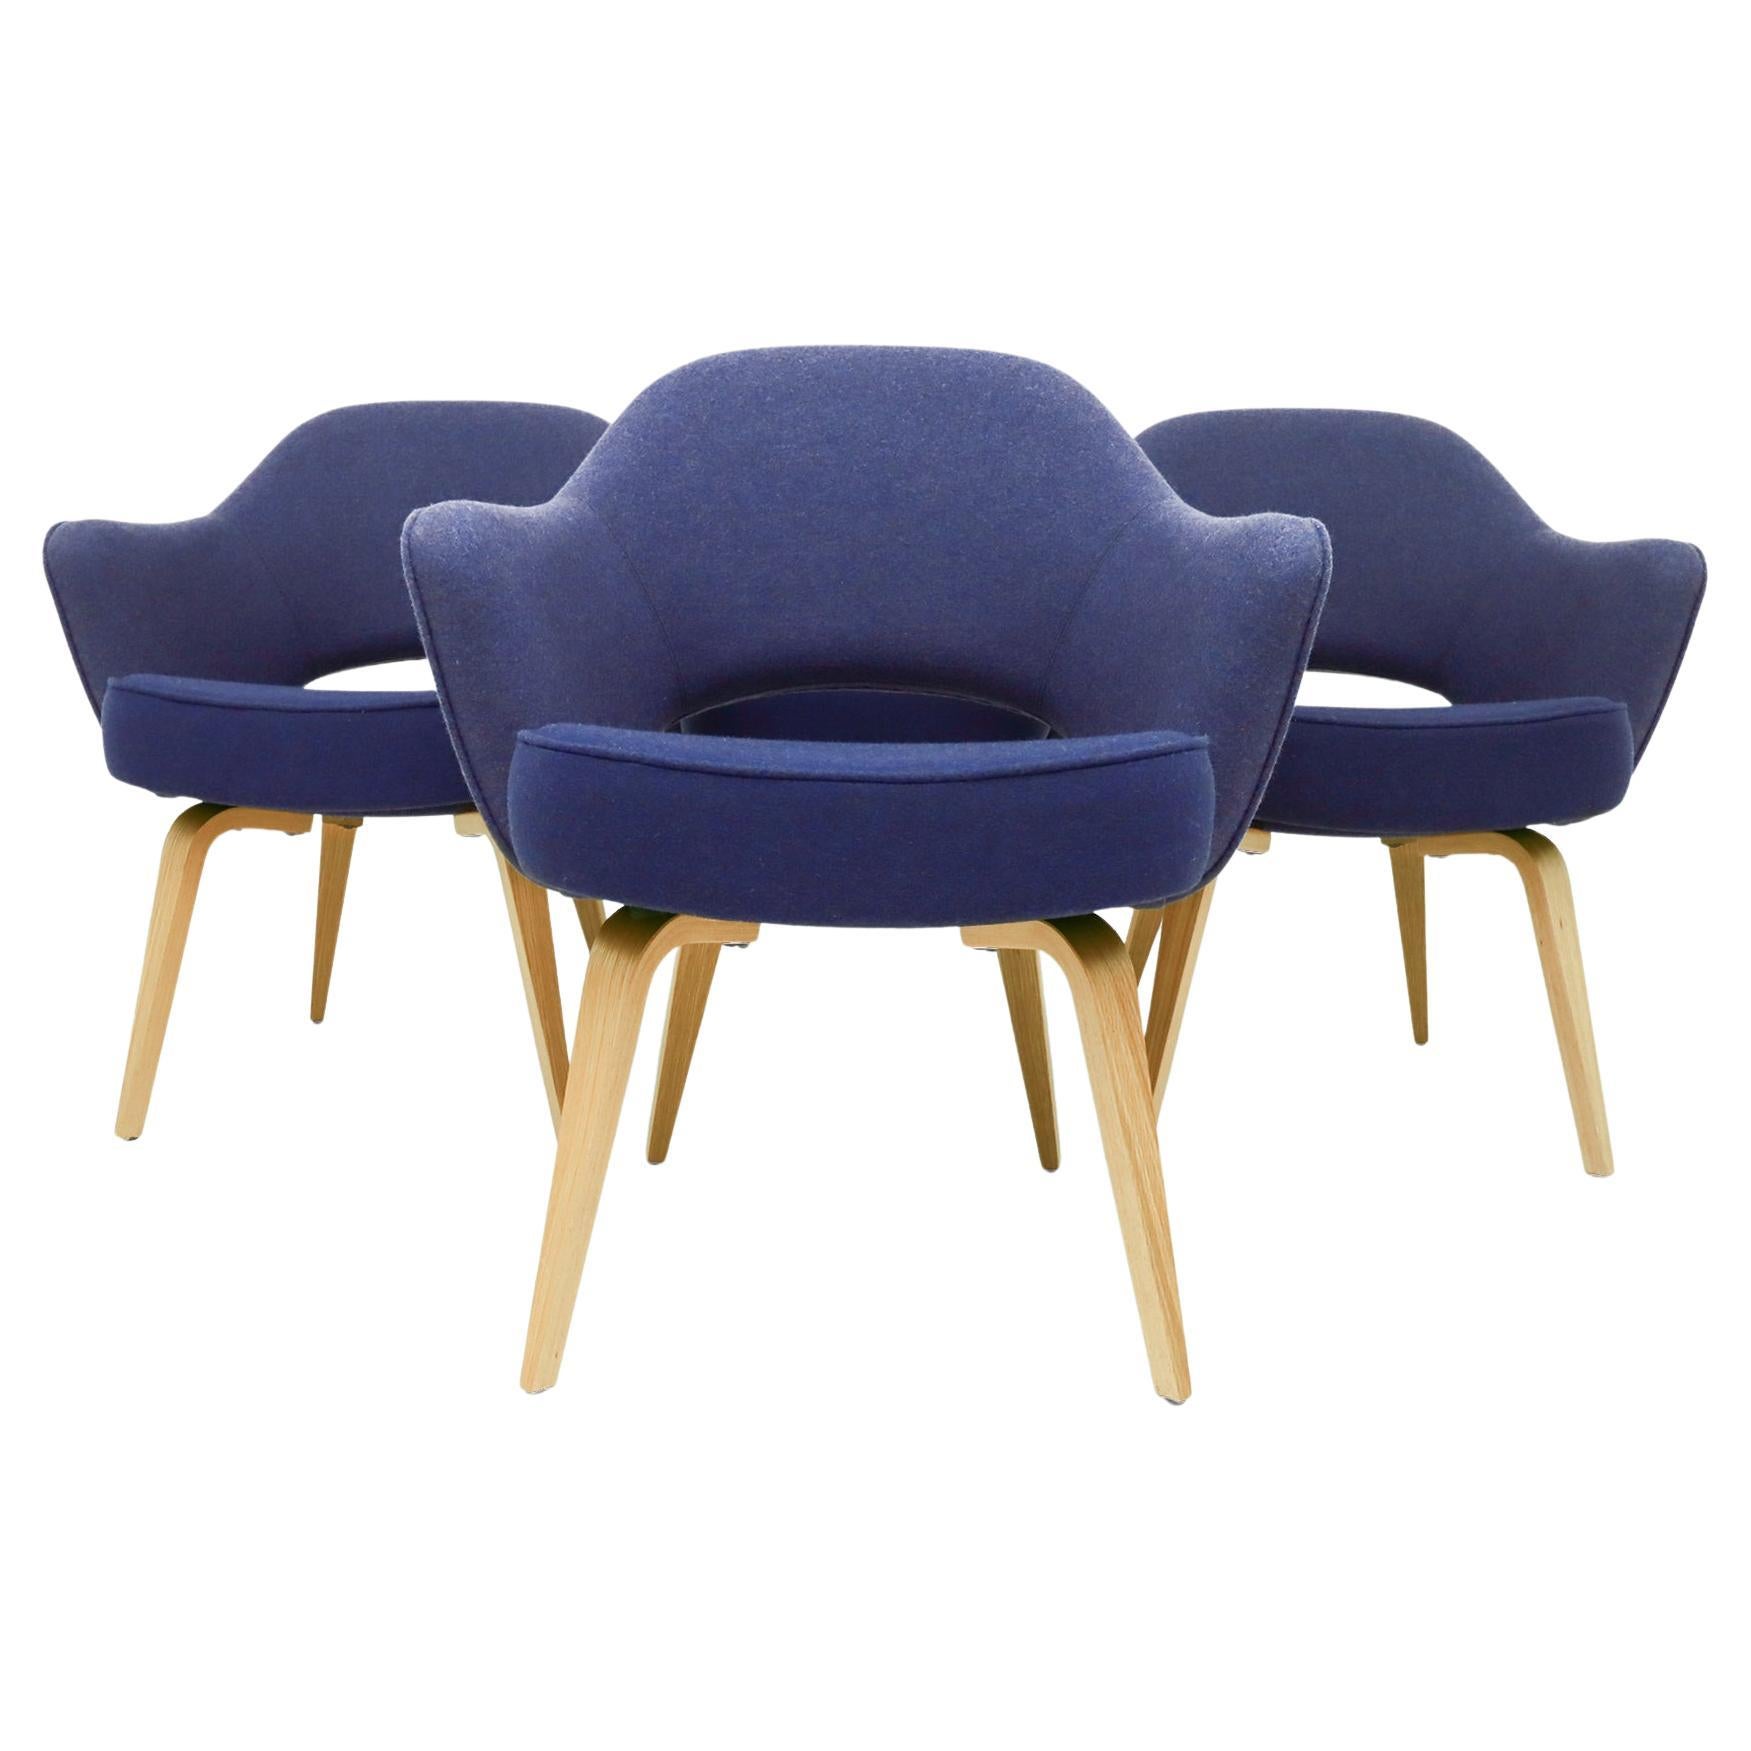 4 vintage Eero Saarininen Knoll Inc. Executive armchairs with an oak frame base For Sale